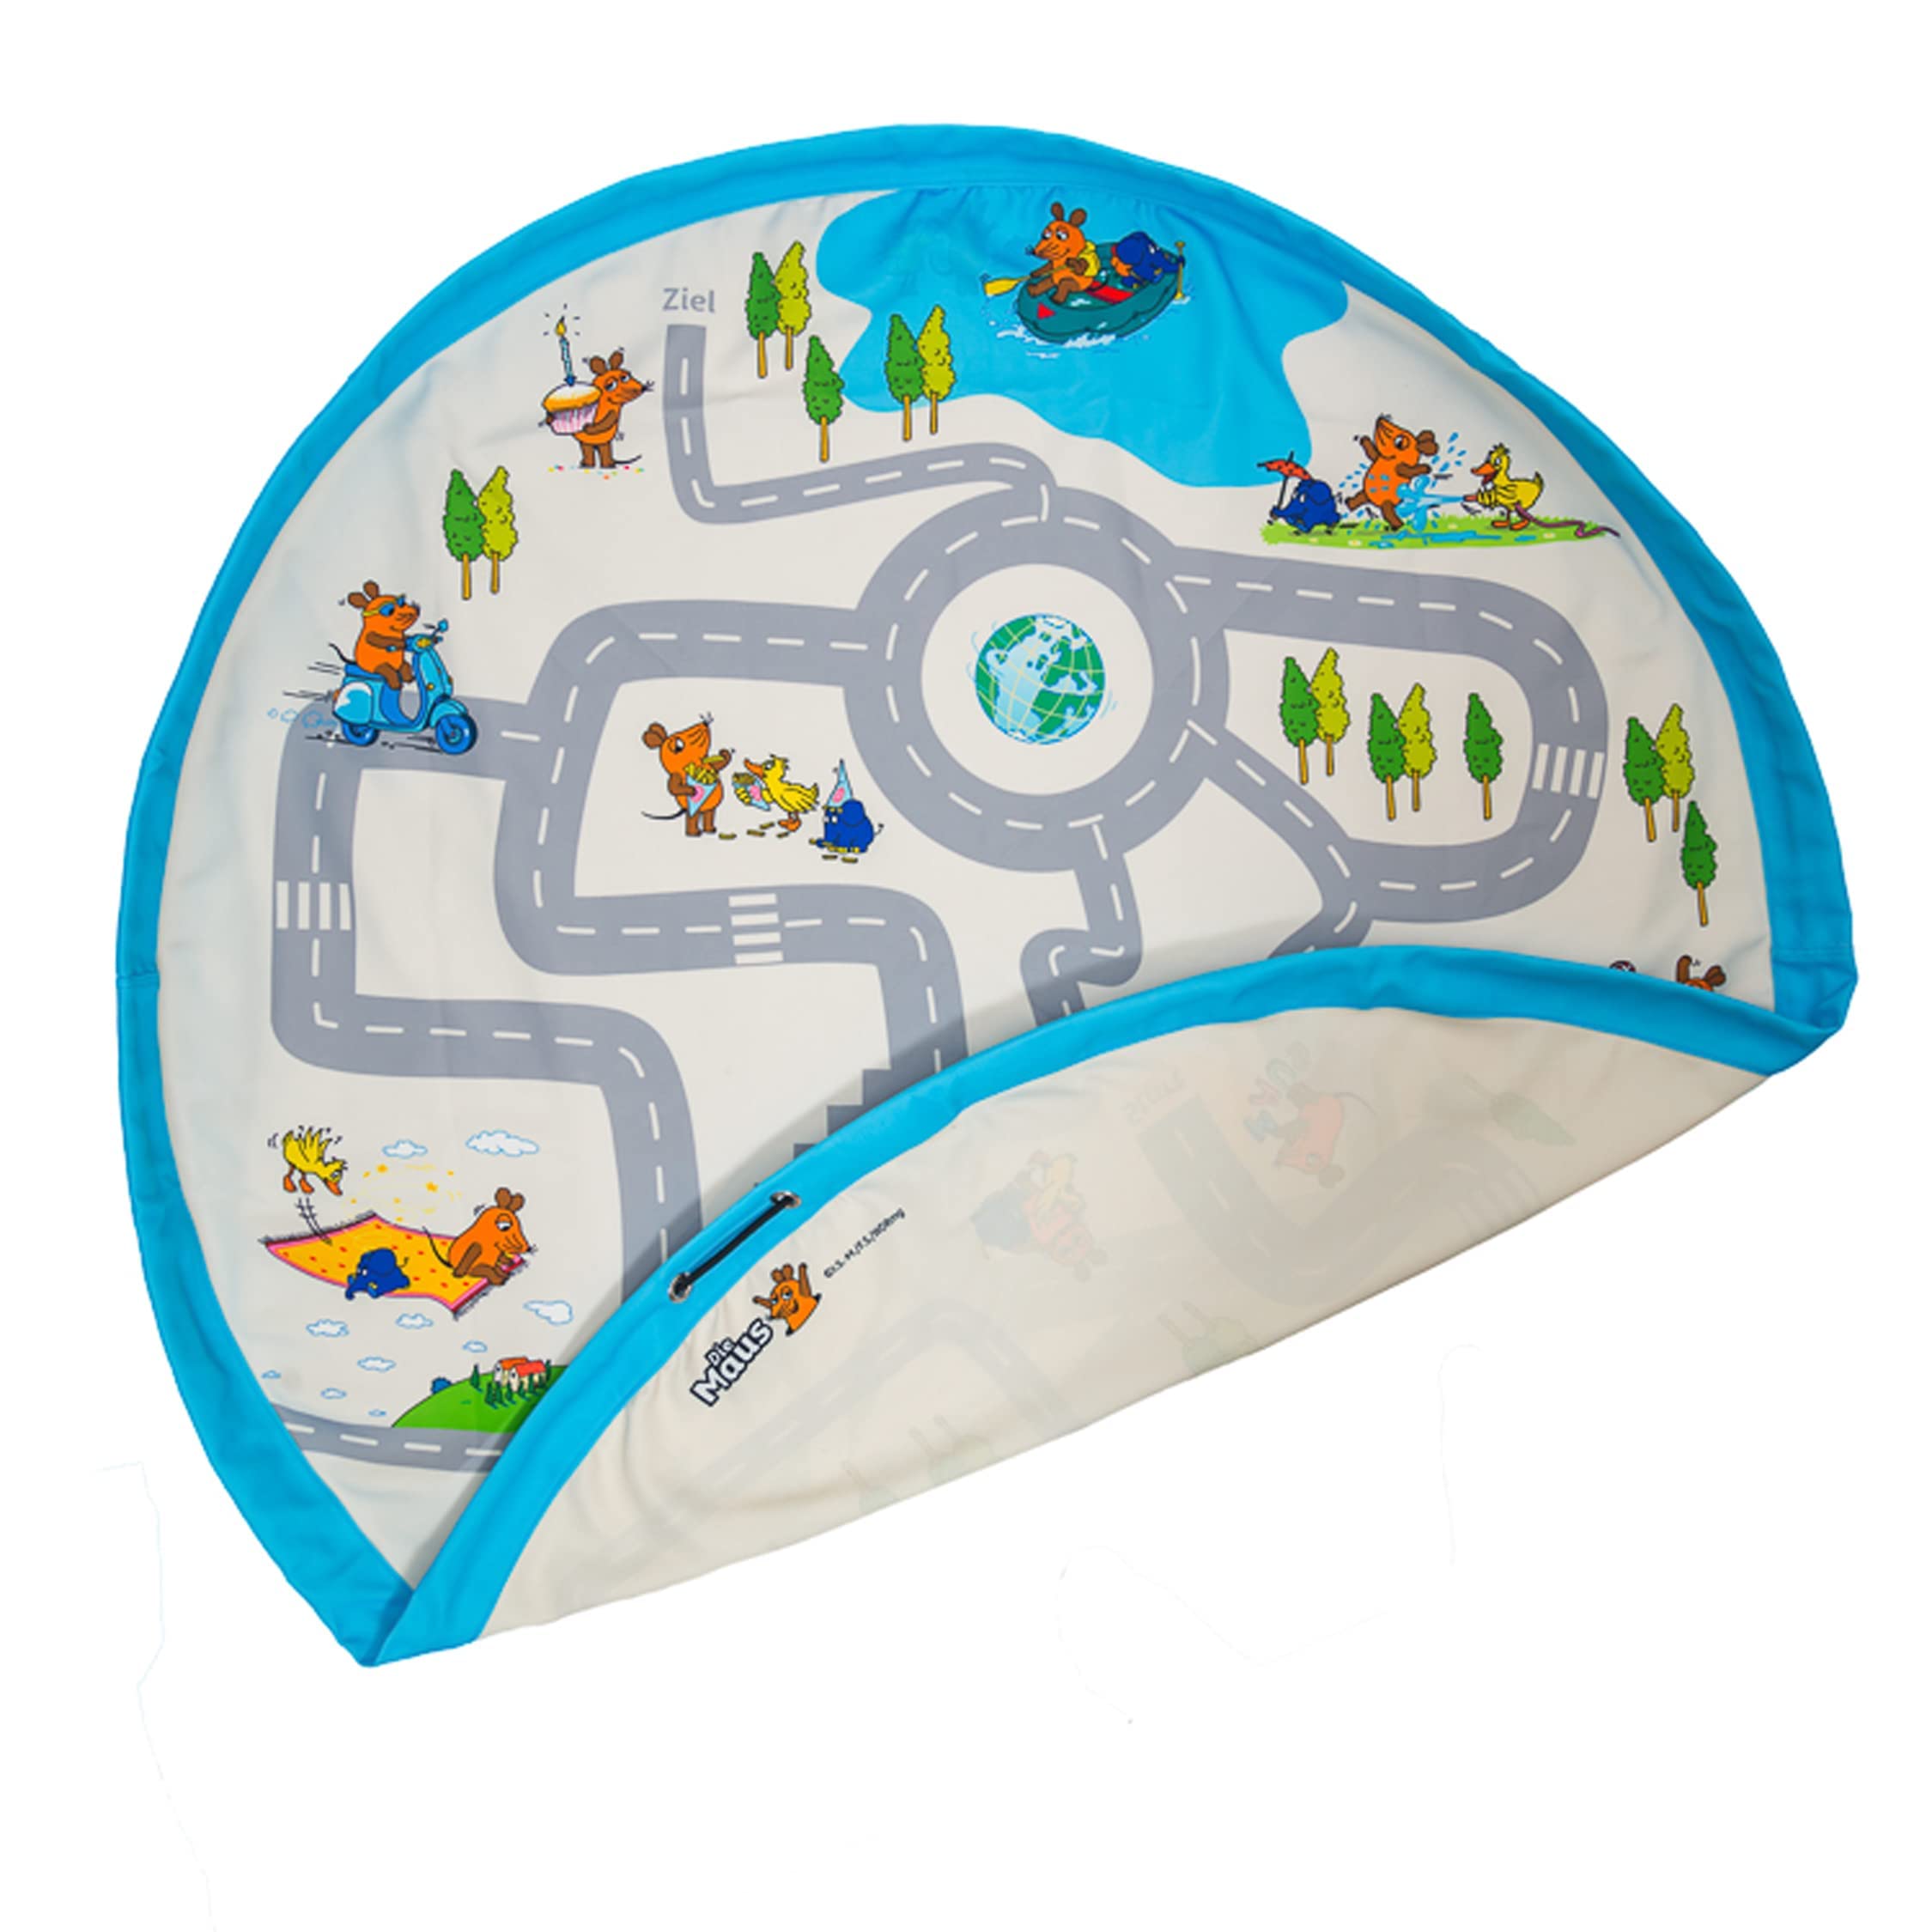 Kinderspielzeug Aufbewahrungsdecke - Spielteppich für Kinder mit "Sendung mit der Maus" Motiv